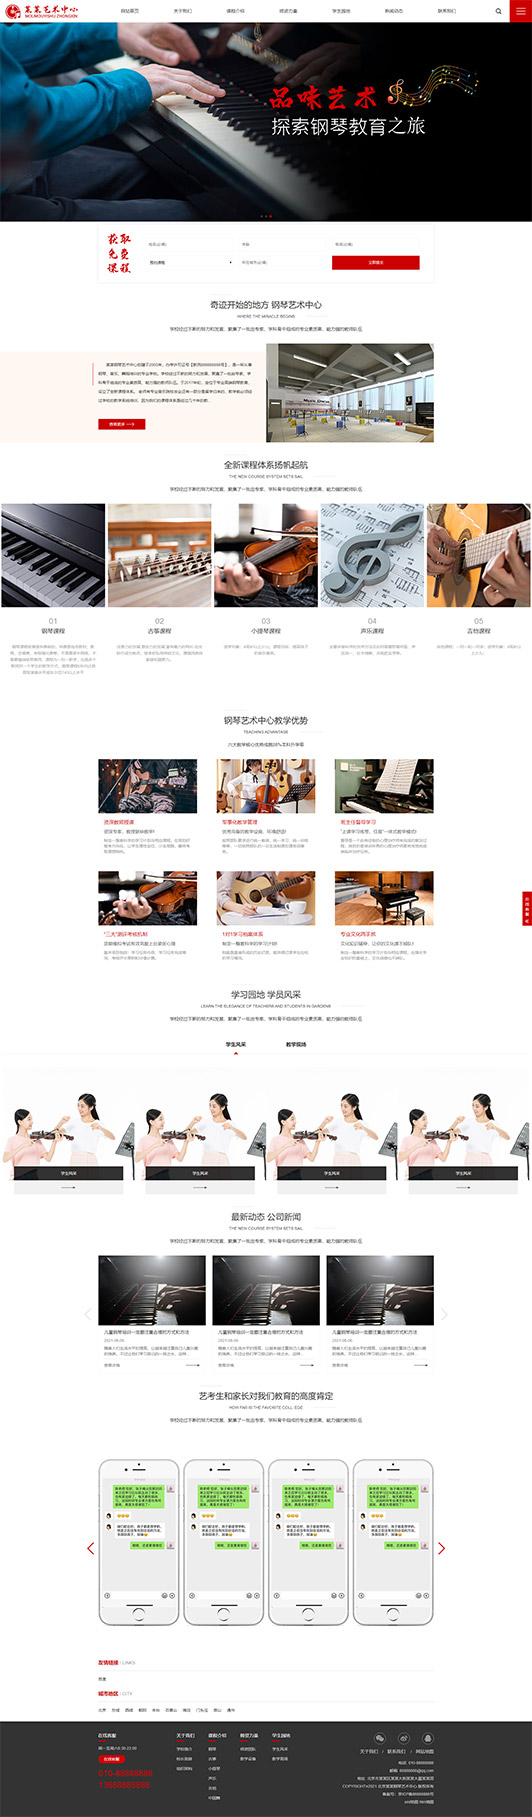 梧州钢琴艺术培训公司响应式企业网站